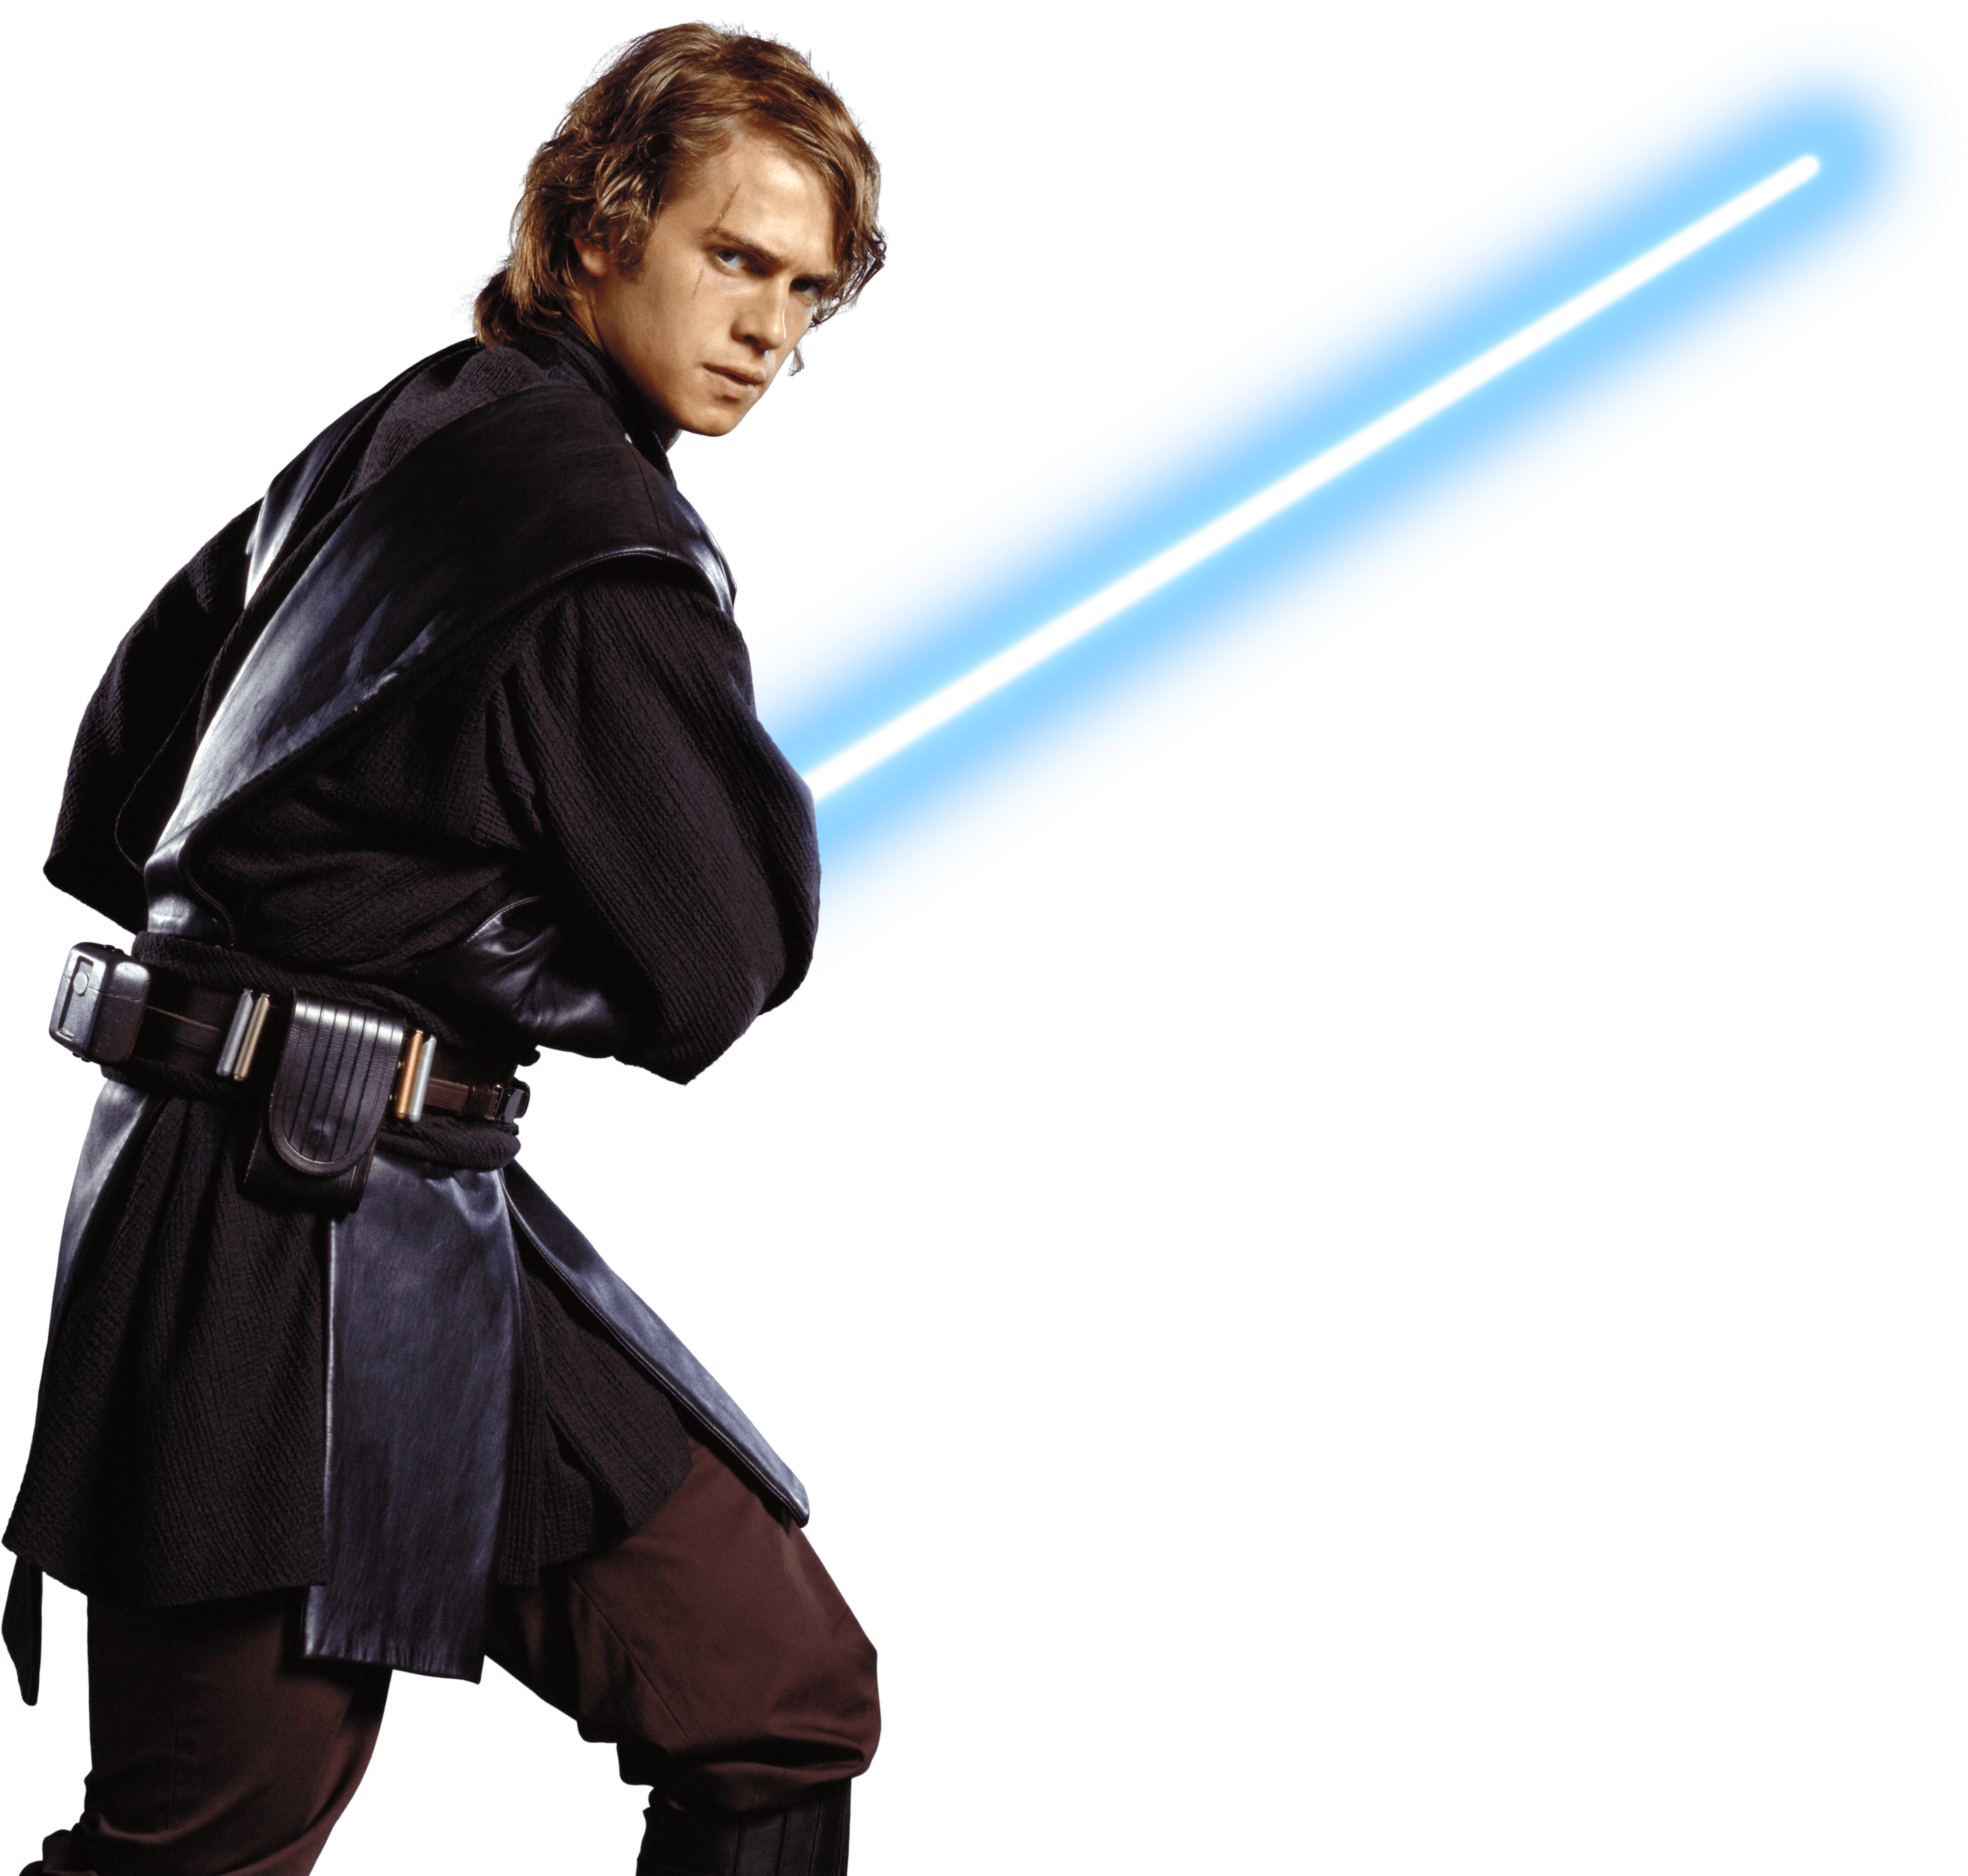 Star Wars Anakin Skywalker Transparent Background - Anakin Skywalker Png (4000x3814), Png Download